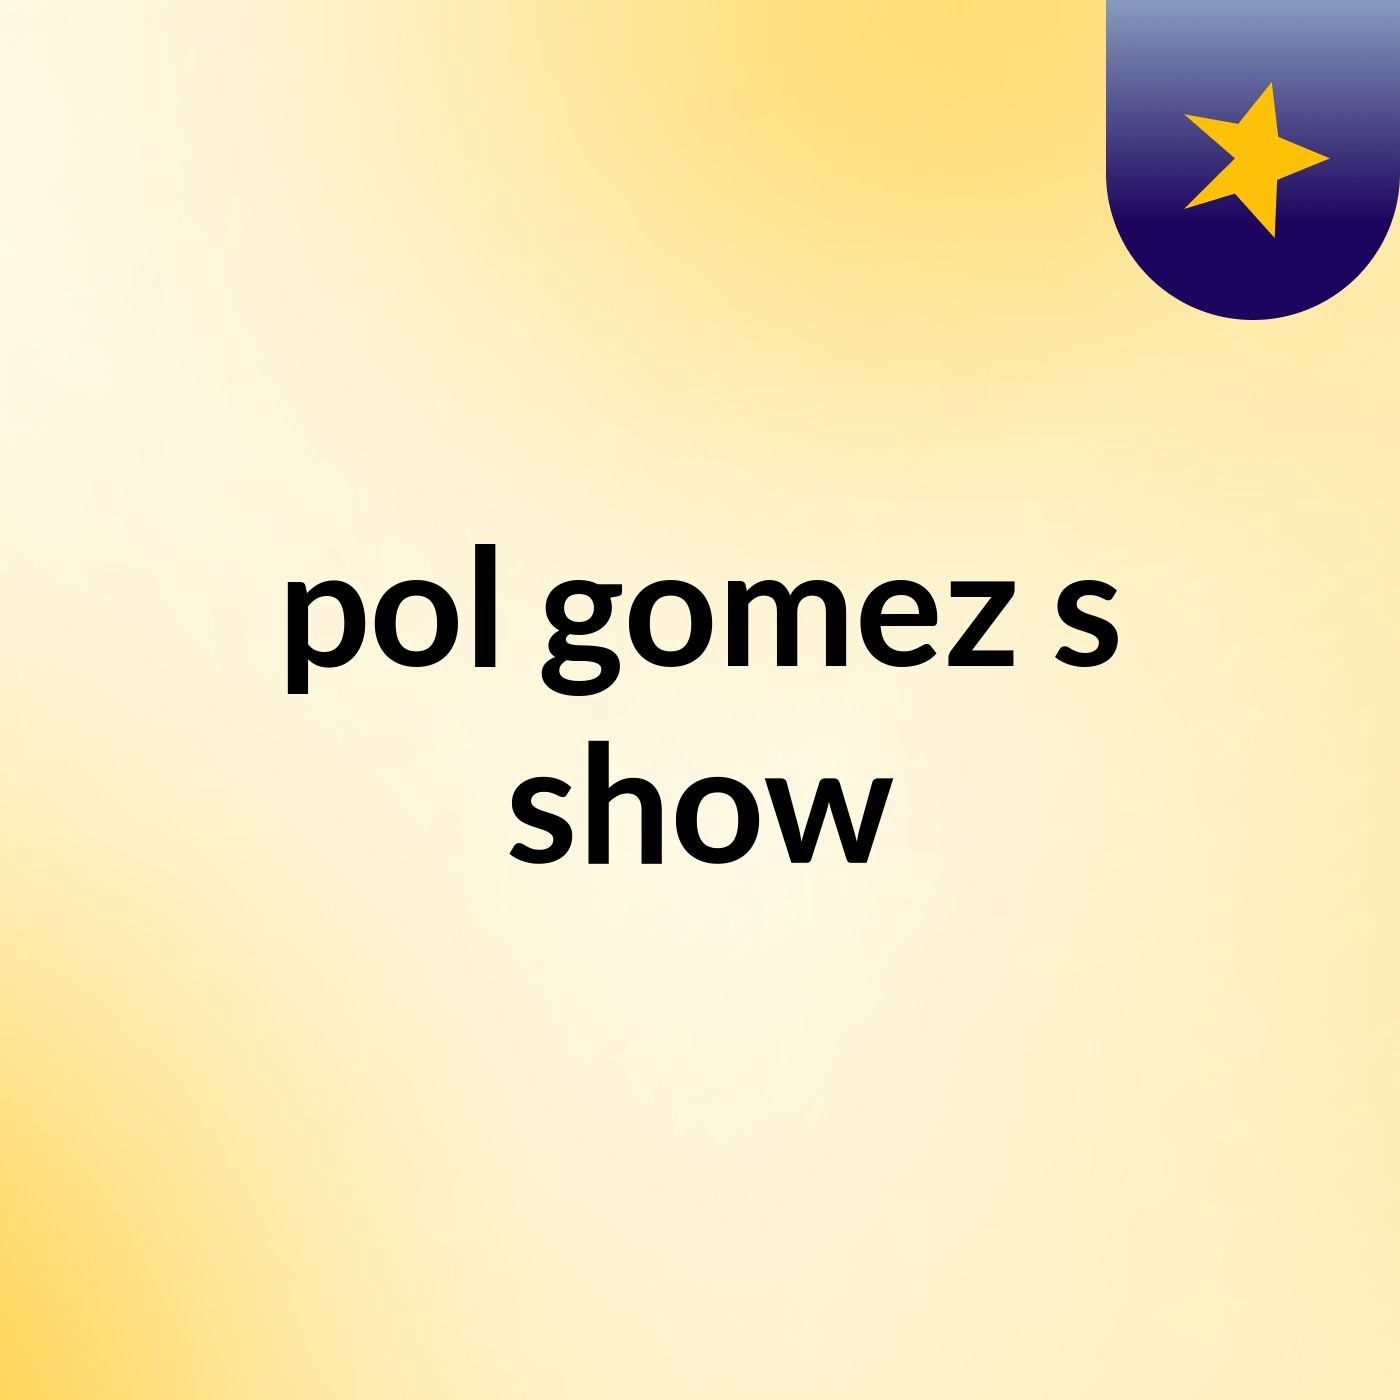 pol gomez's show